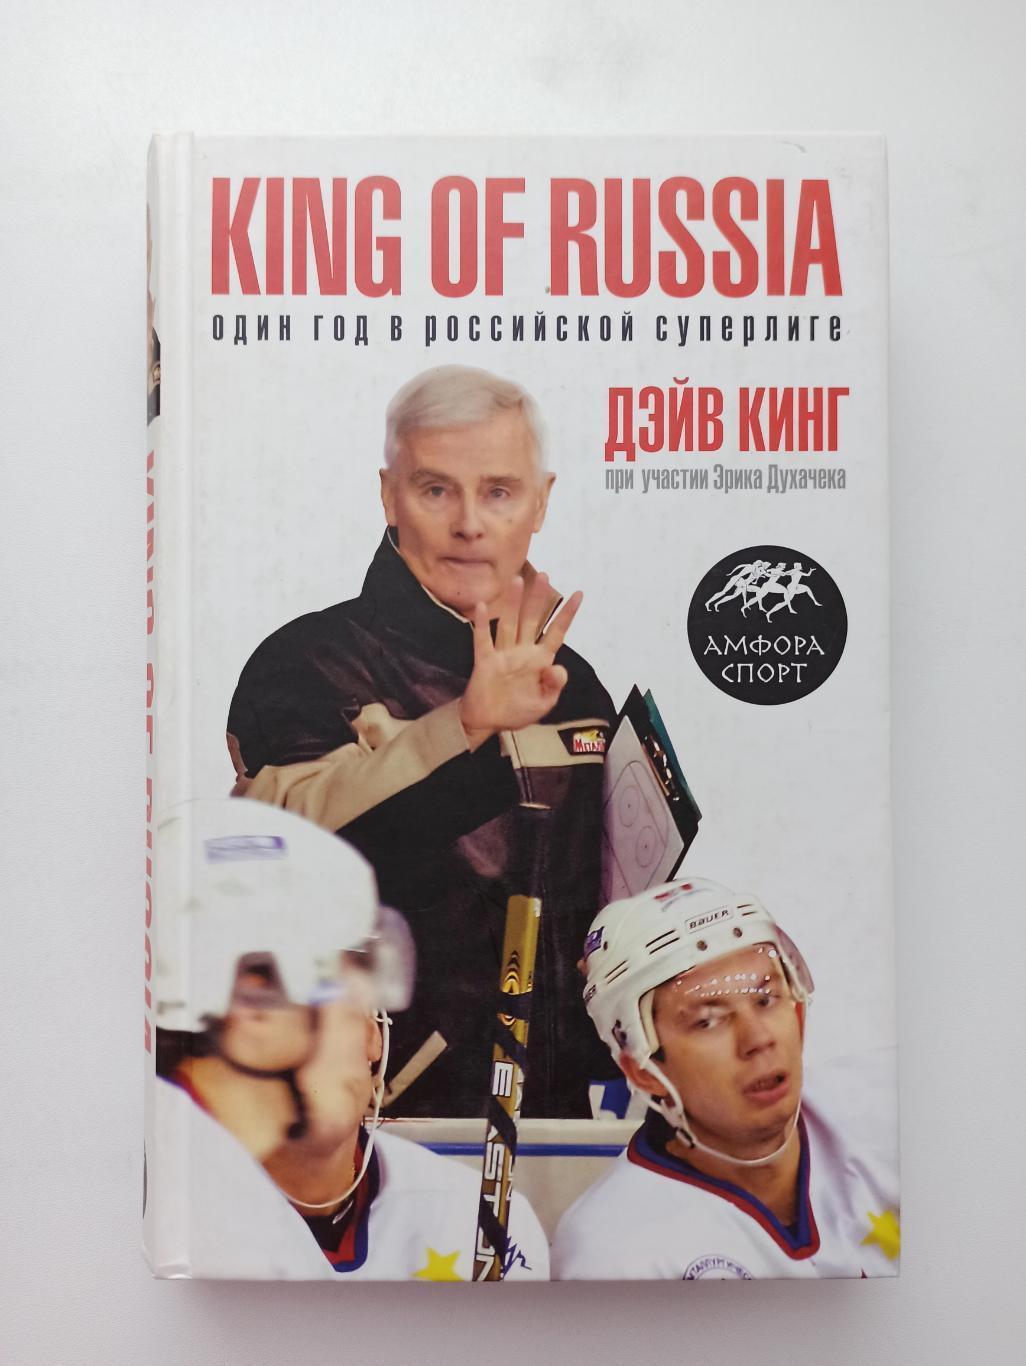 Дэйв Кинг, King of Russia, Один год в Российской Суперлиге. Москва,2008. 383 стр